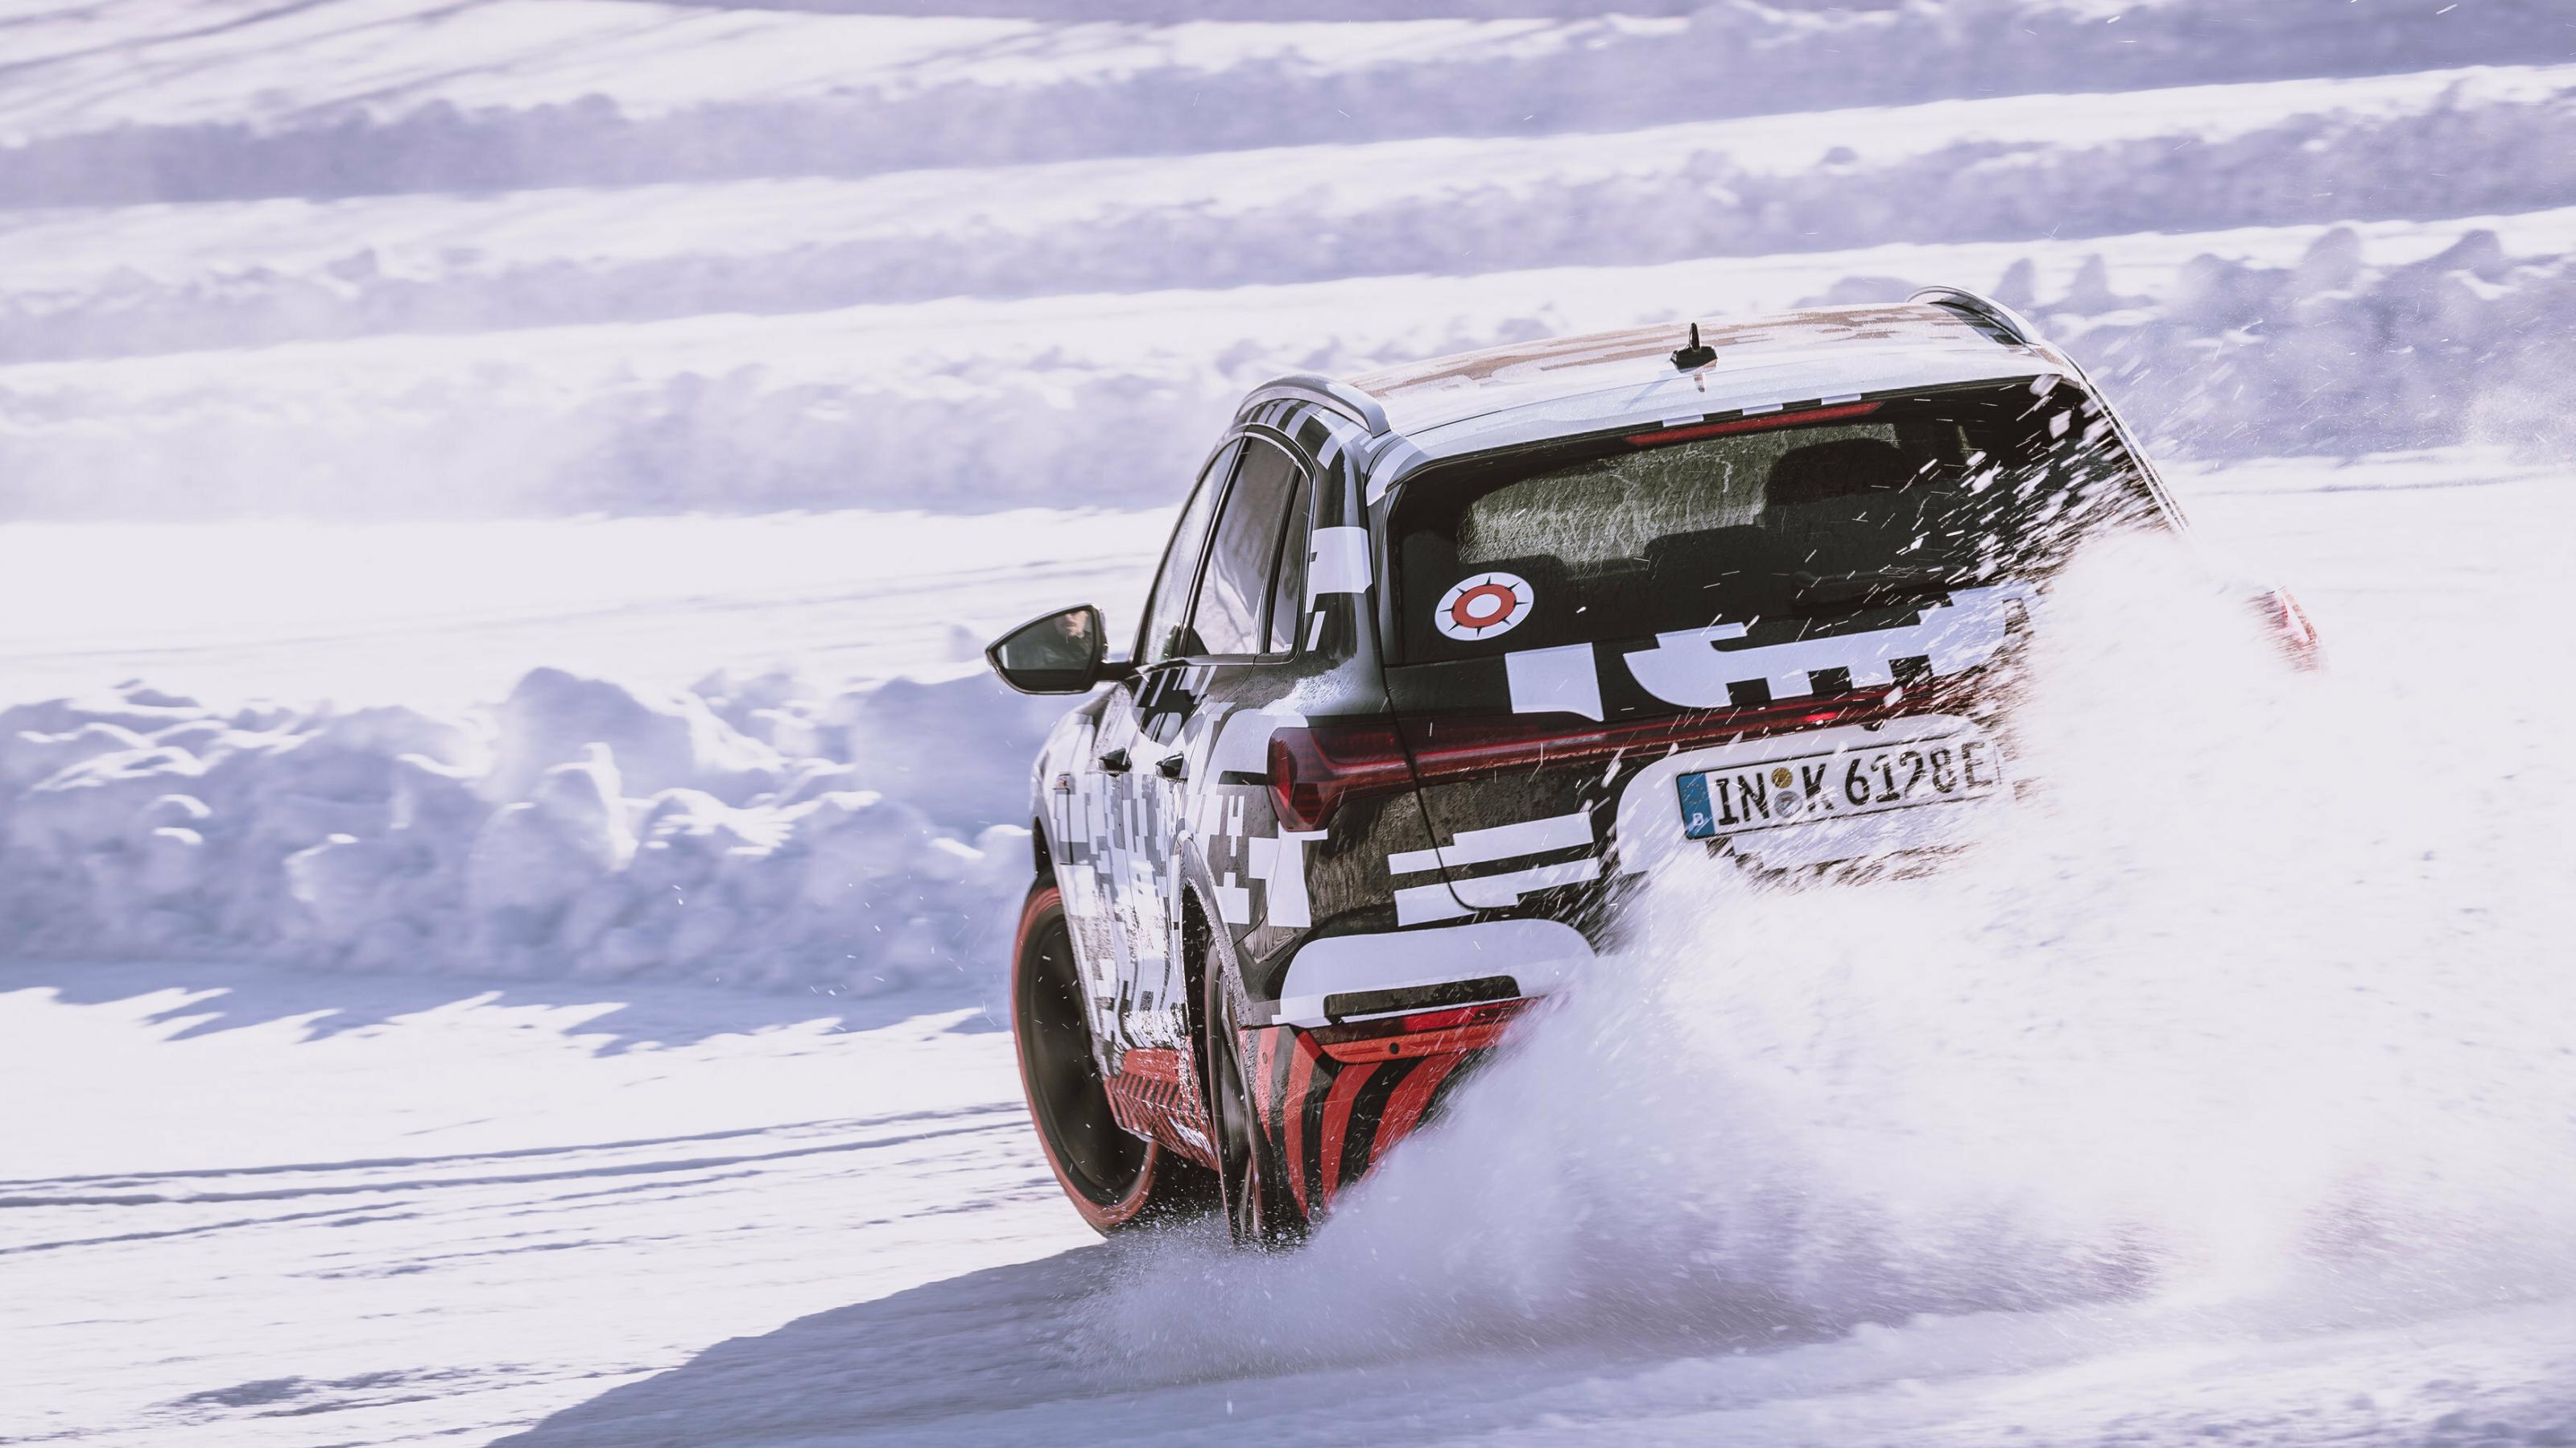 Ein mit Rallye-Muster beklebtes Elektroauto pflügt durch den Schnee. Die Aufnahme zeigt das Auto von hinten, wie es um die Kurve fährt und Schnee aufwirbelt.